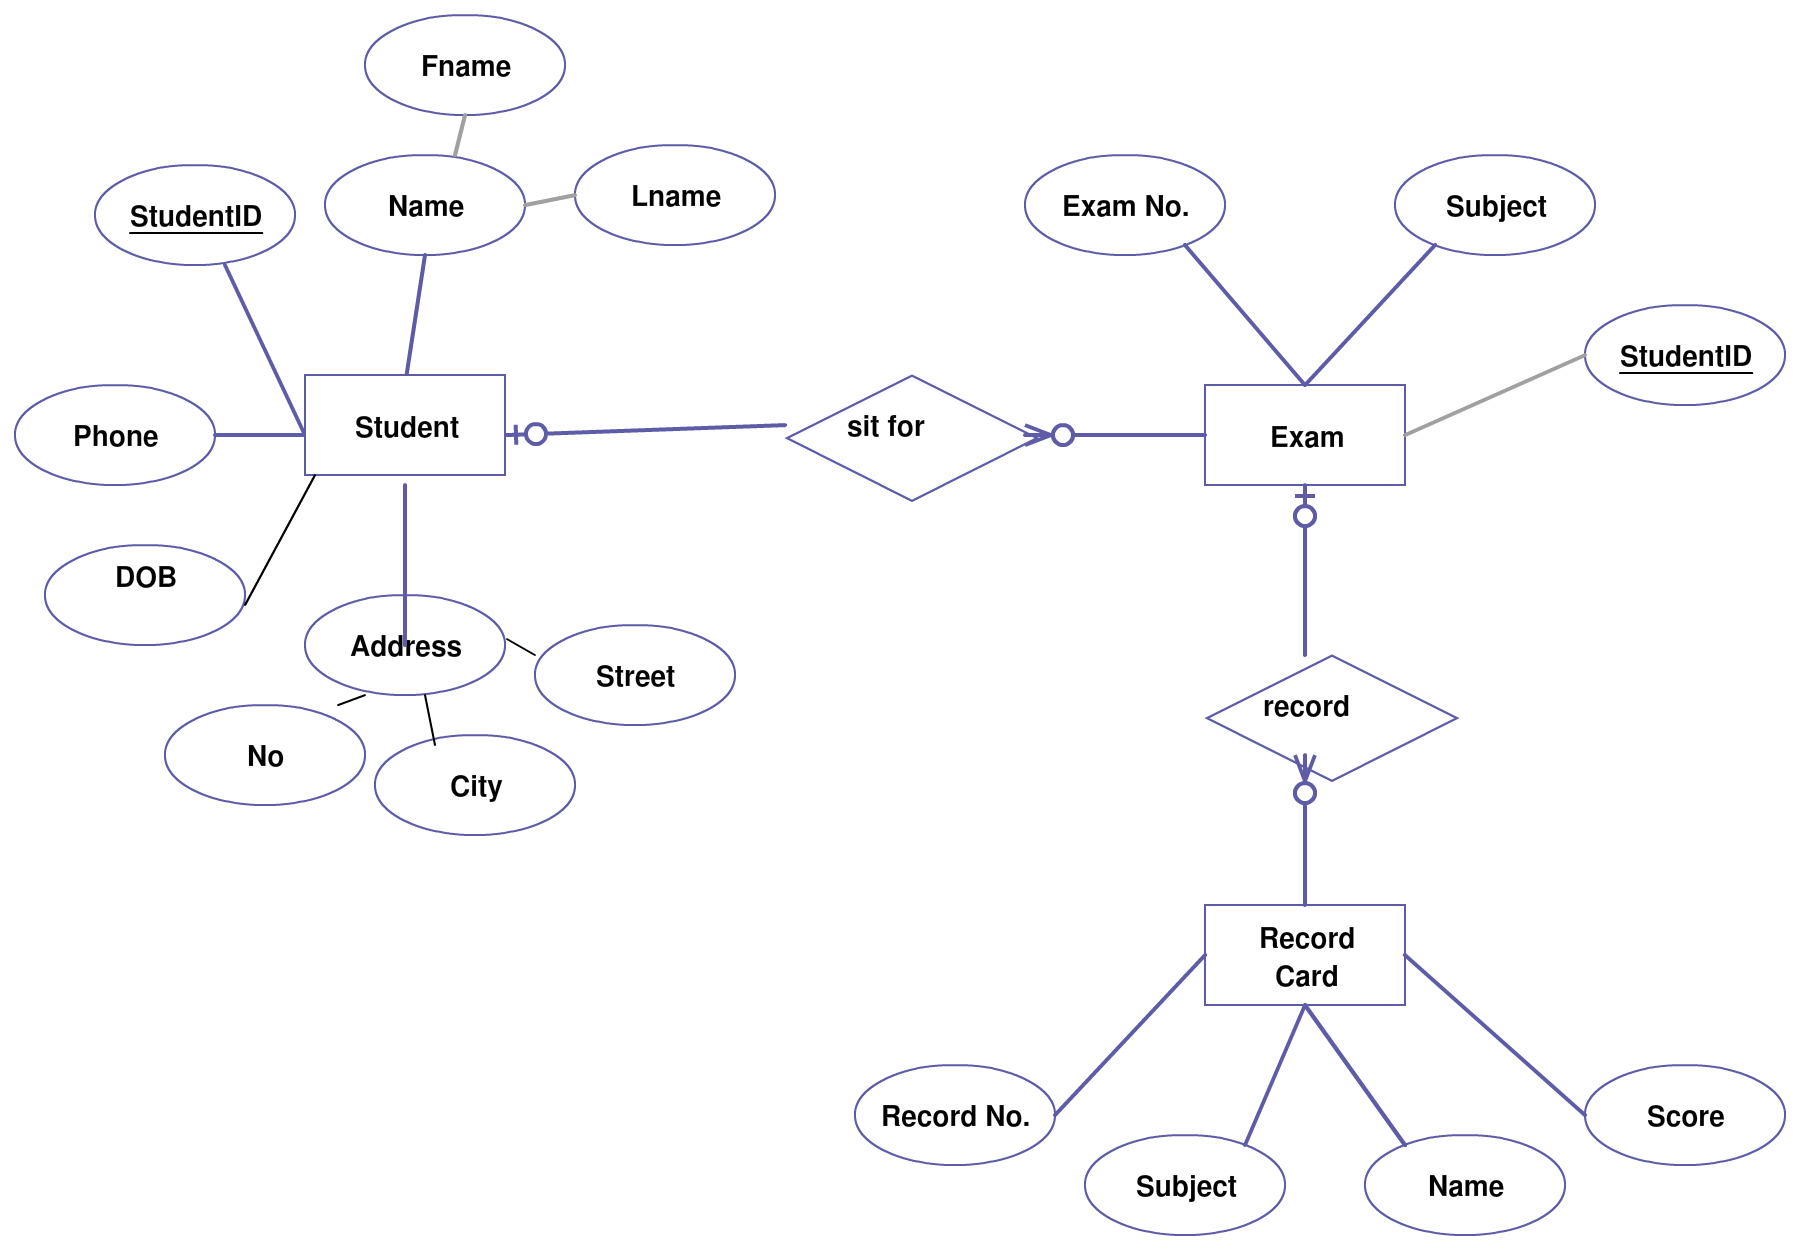 Entity Relationship Diagram (ER Diagram) Of Student Information System